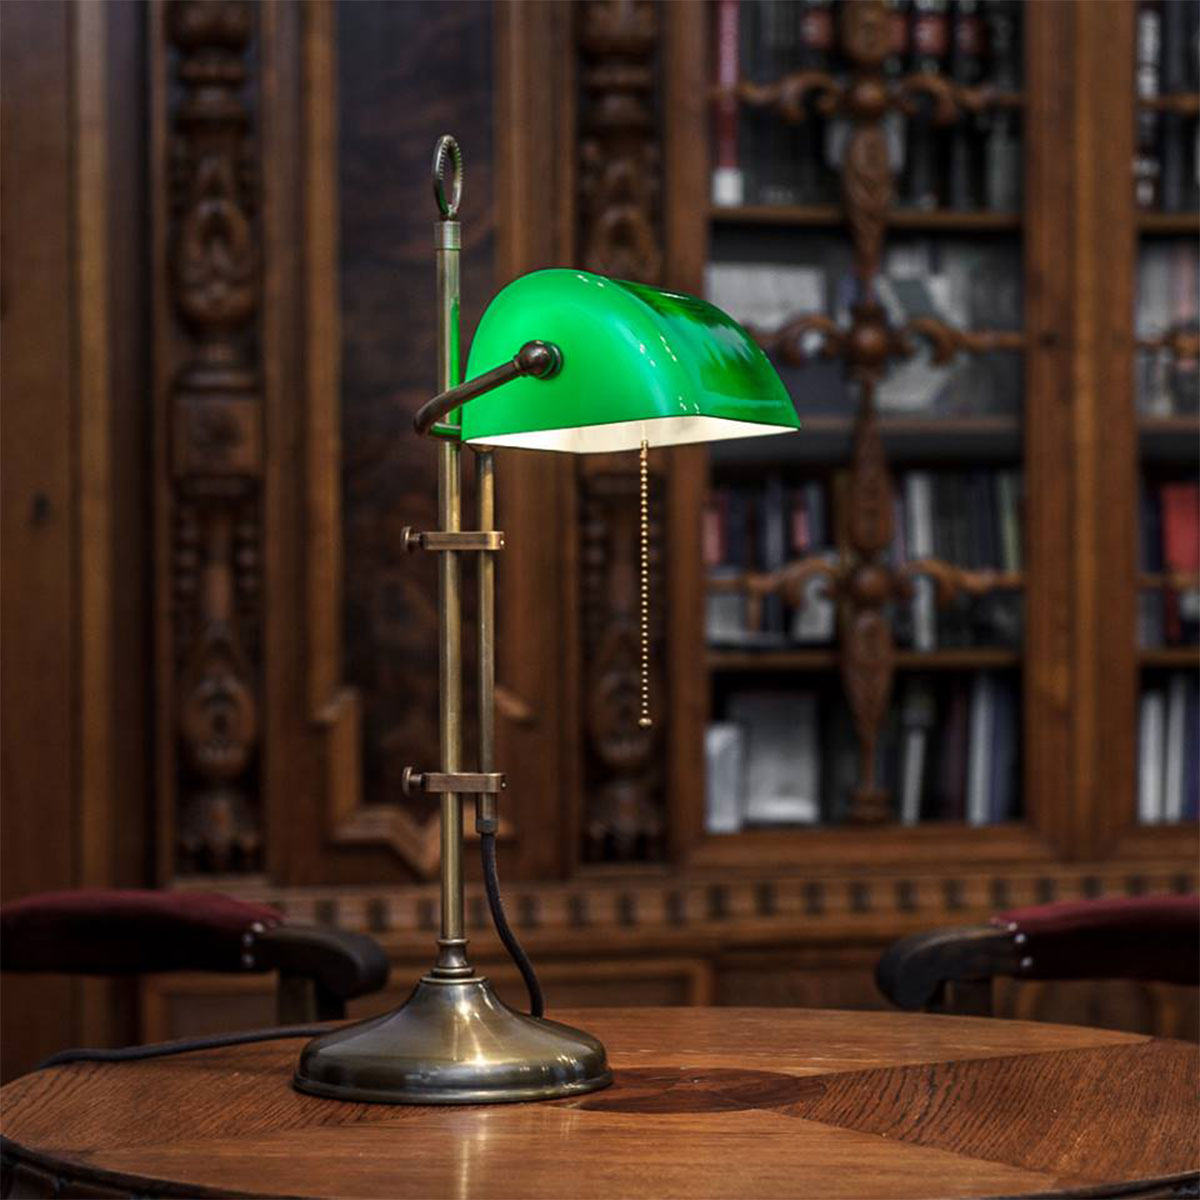 Klassische Schreibtischlampe: Bankerlampe mit rundem Sockel: Klassische Bankerlampe: hier glattes Gestänge in Messing antik patiniert, grüner Schirm